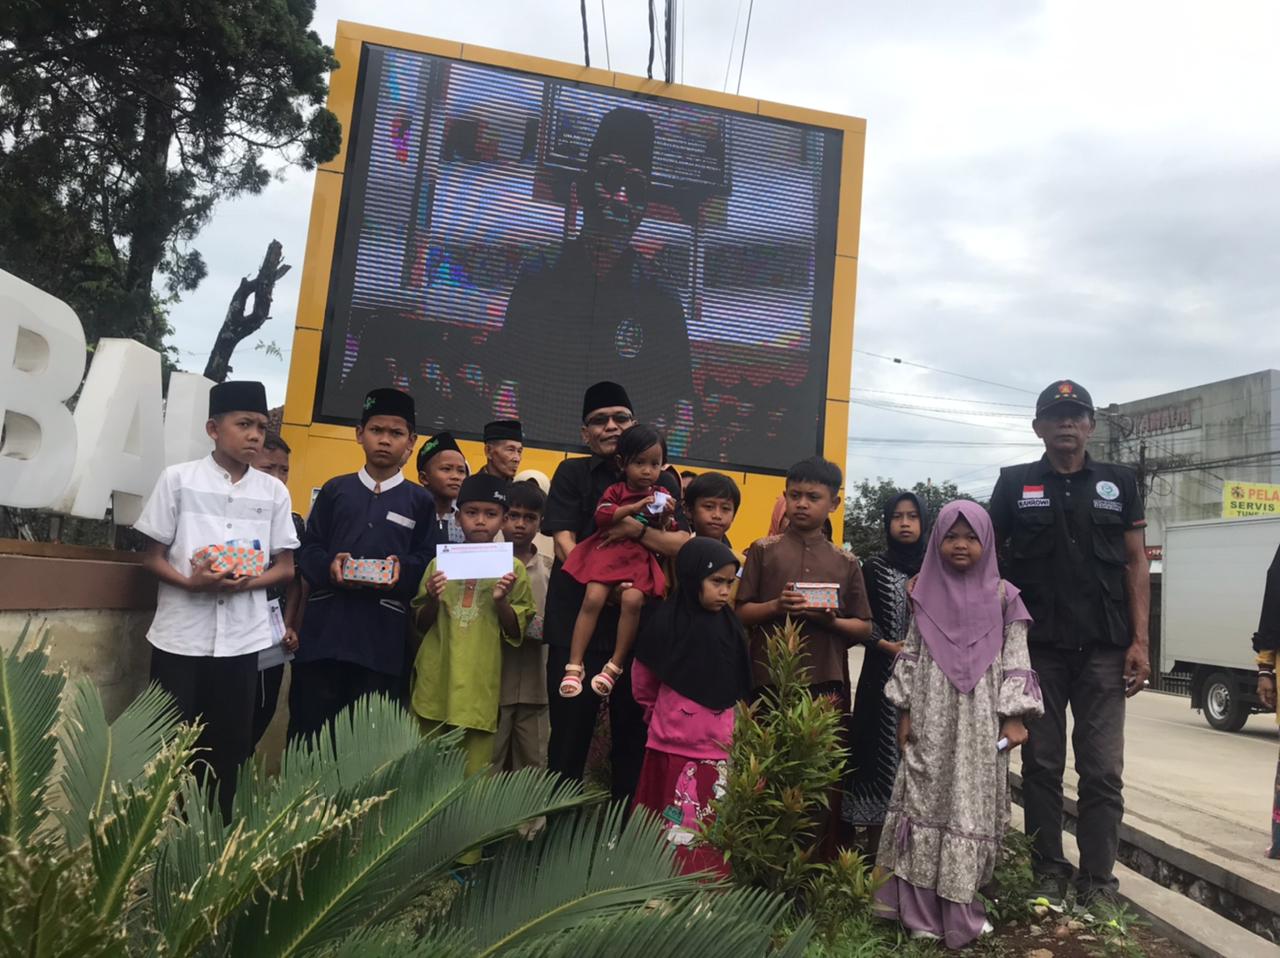 Anggota DPRD Kabupaten Sukabumi Fraksi Gerindra Ade Dasep Zaenal Abidin saat mengajak anak yatim berfoto bersama didepan Layar Videotron Murotal Alquran di Kecamatan Cikembar.